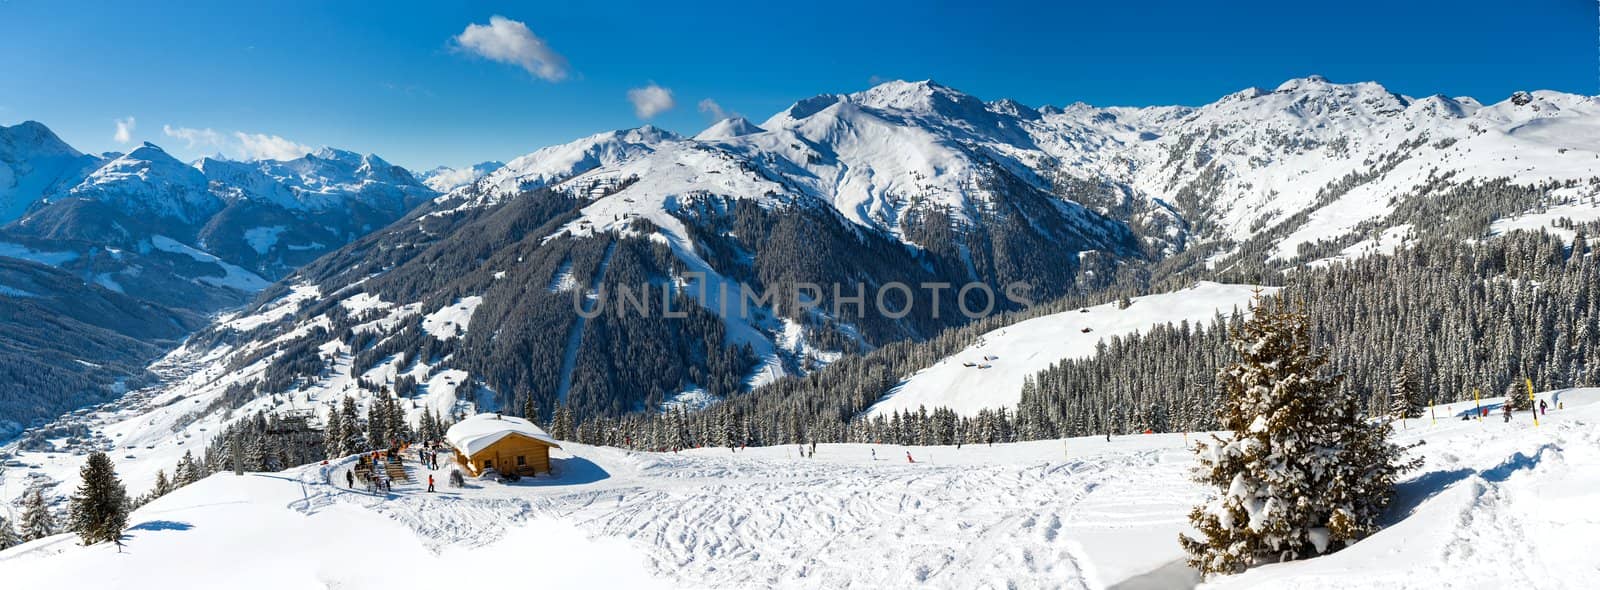 Ski resort. Austria by maxoliki